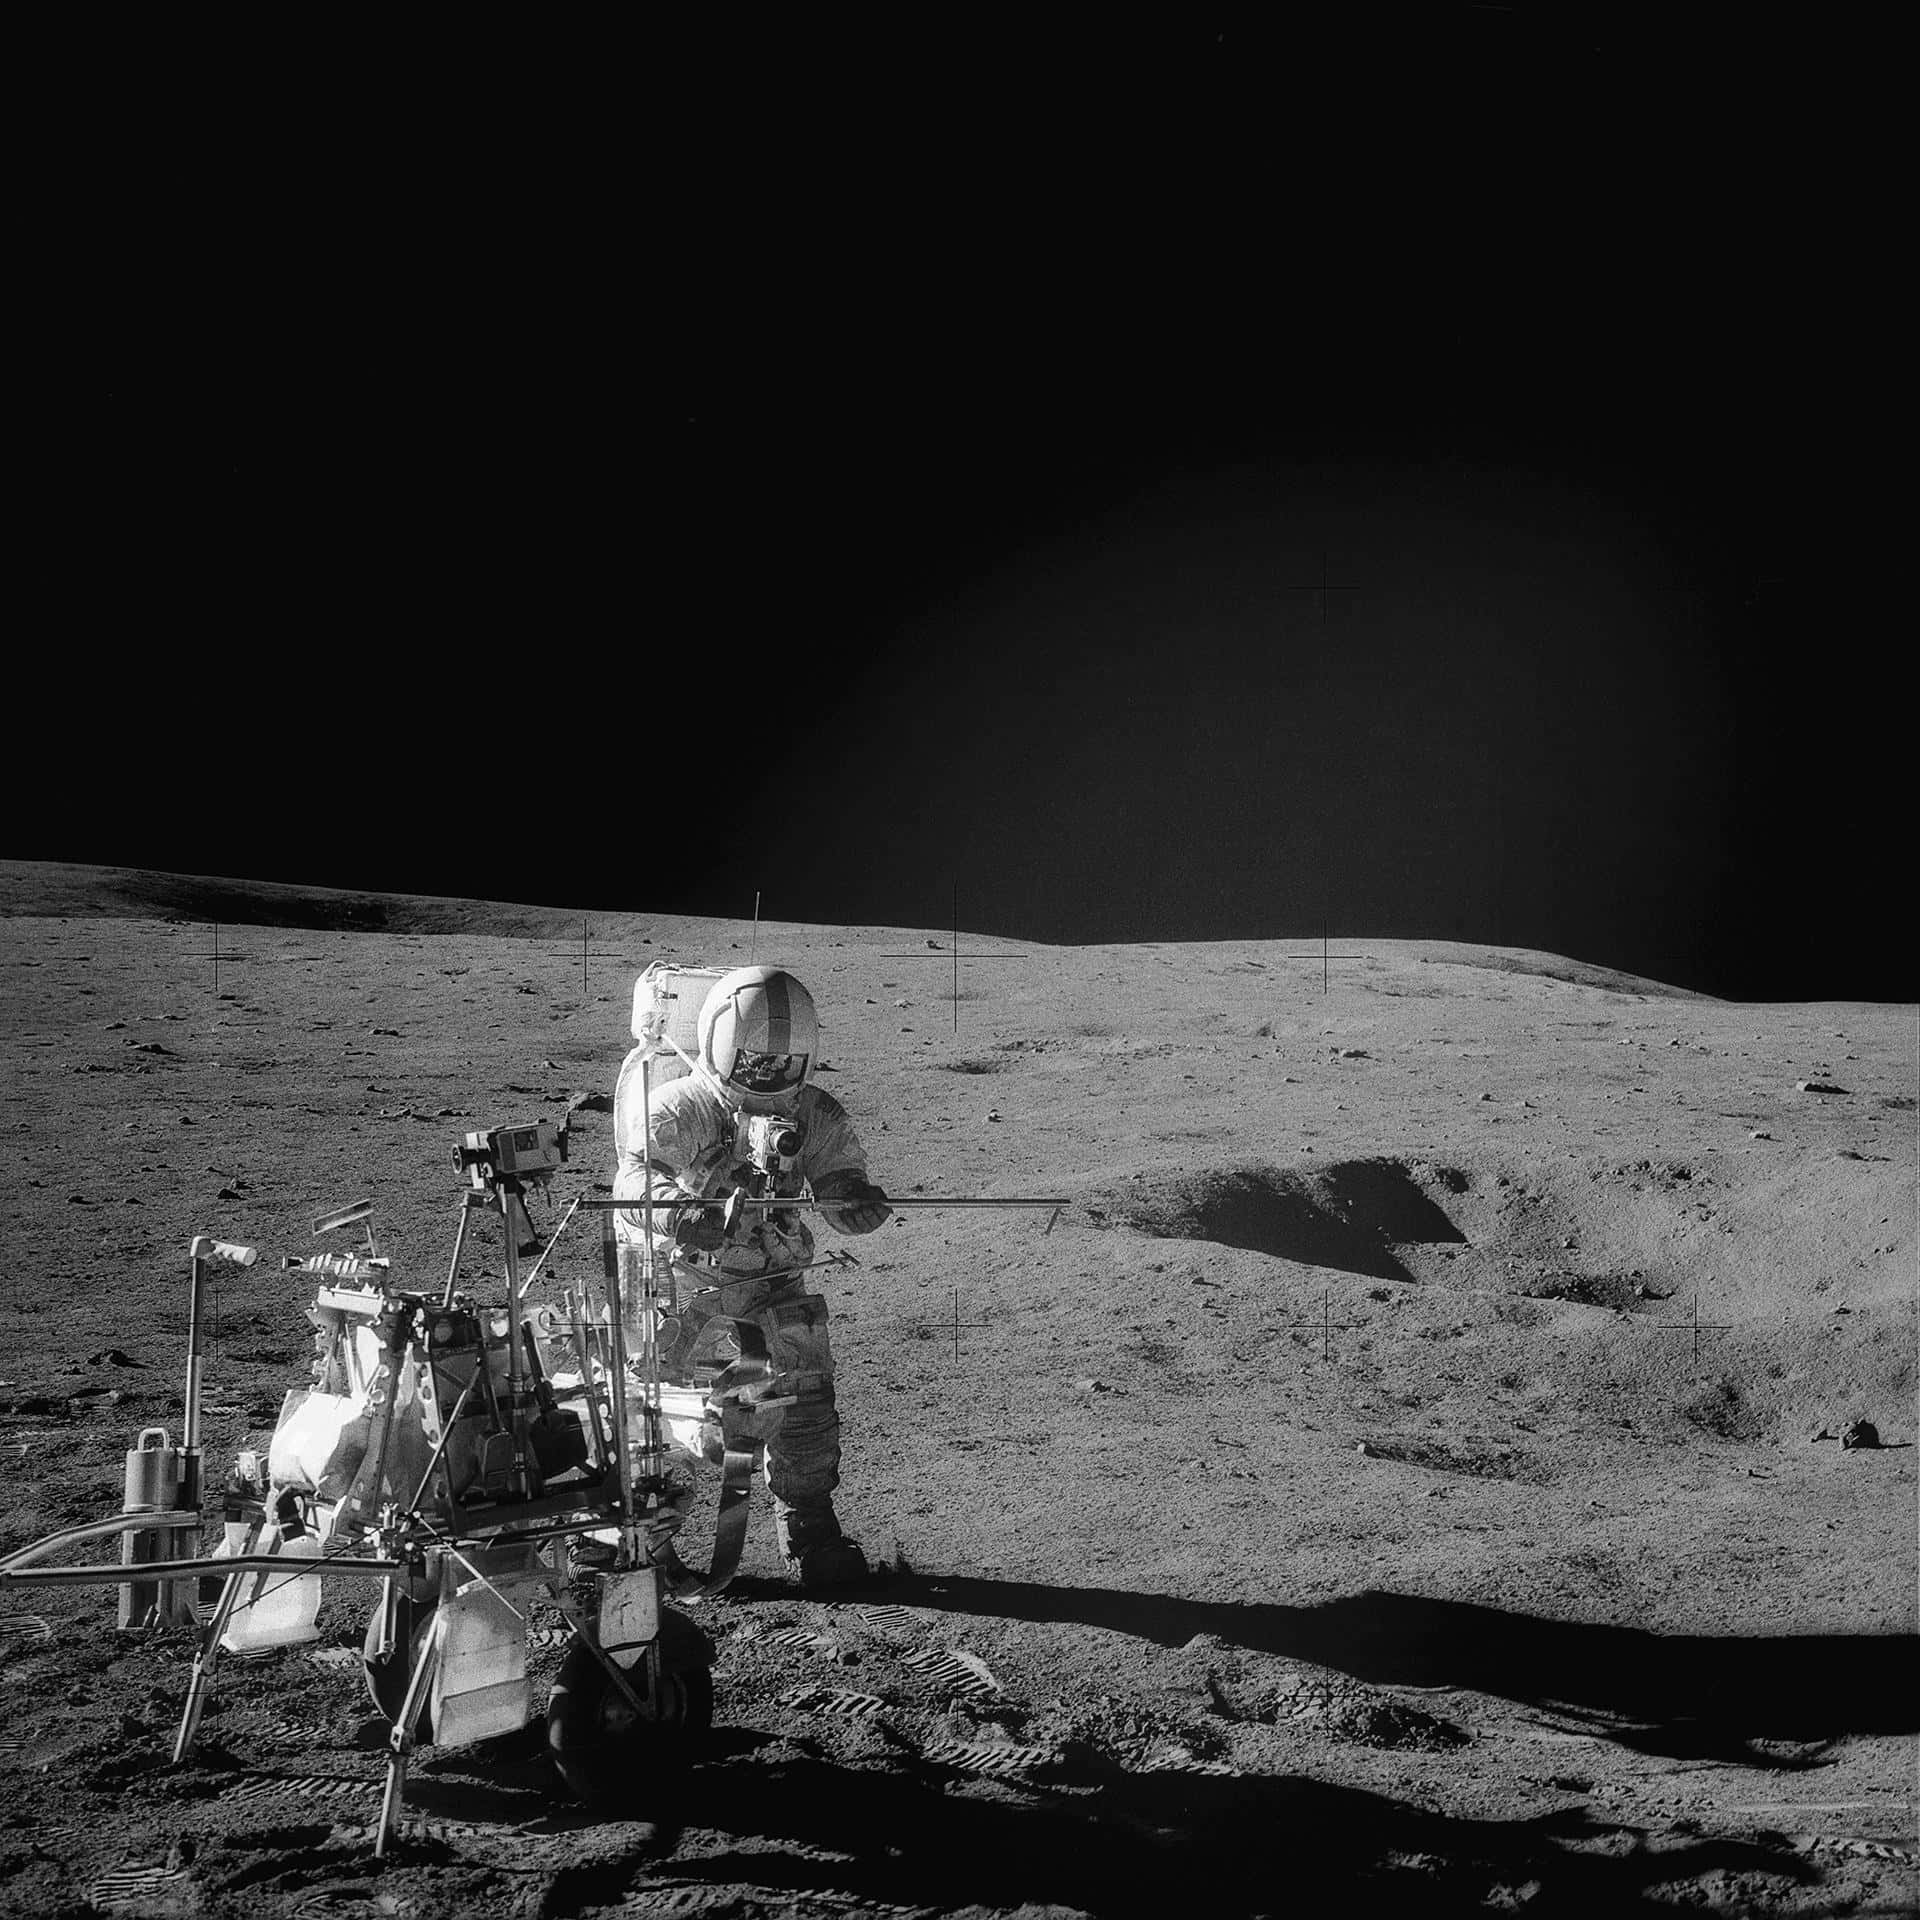 Imagemdos Astronautas Armstrong E Aldrin Orgulhosamente Em Pé Na Superfície Da Lua.